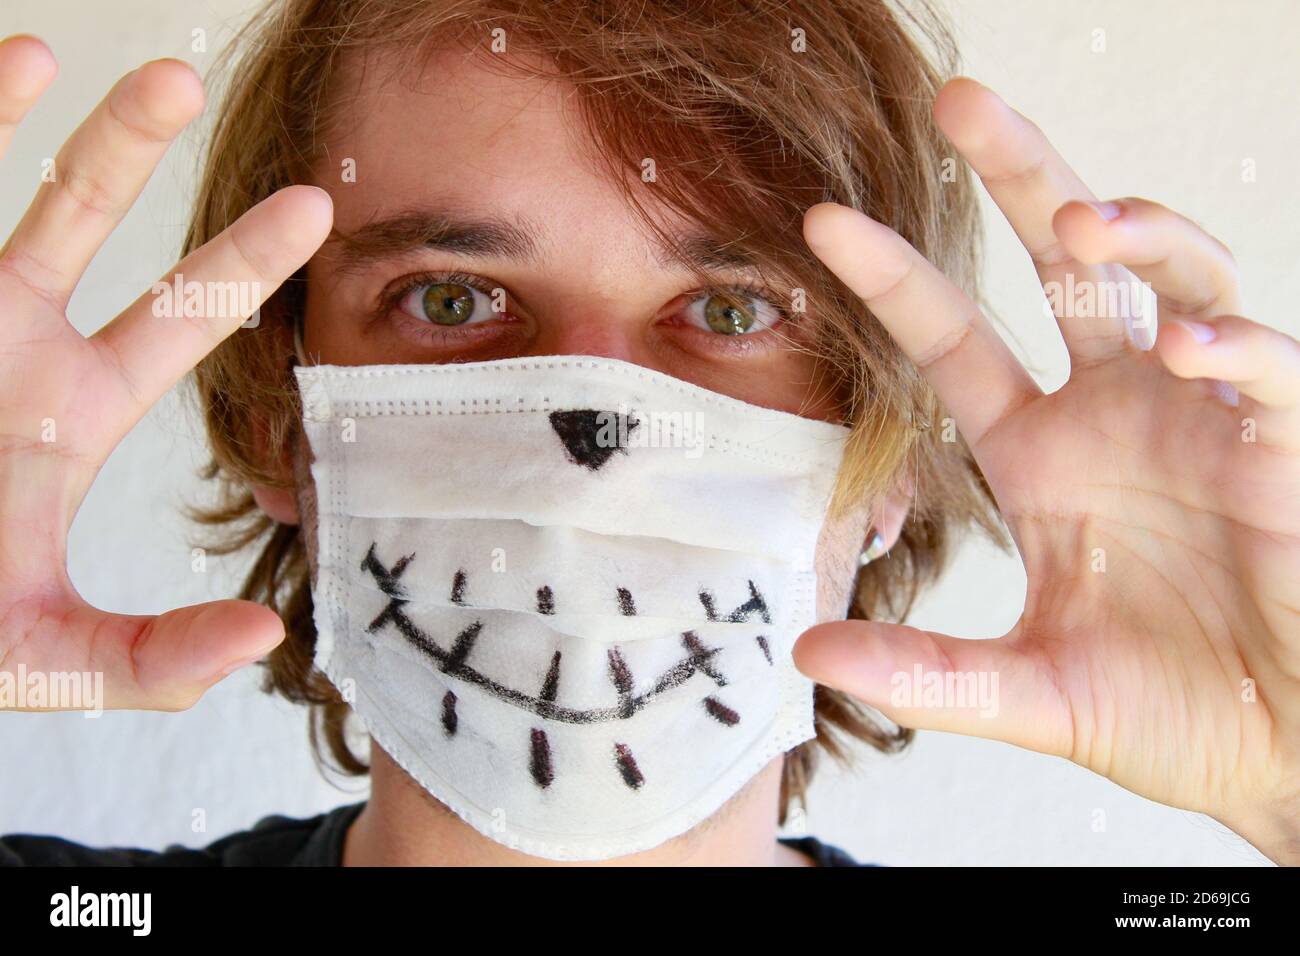 Junger Mann feiert Halloween mit medizinischer Gesichtsmaske wegen Covid-19 Pandemie Stockfoto